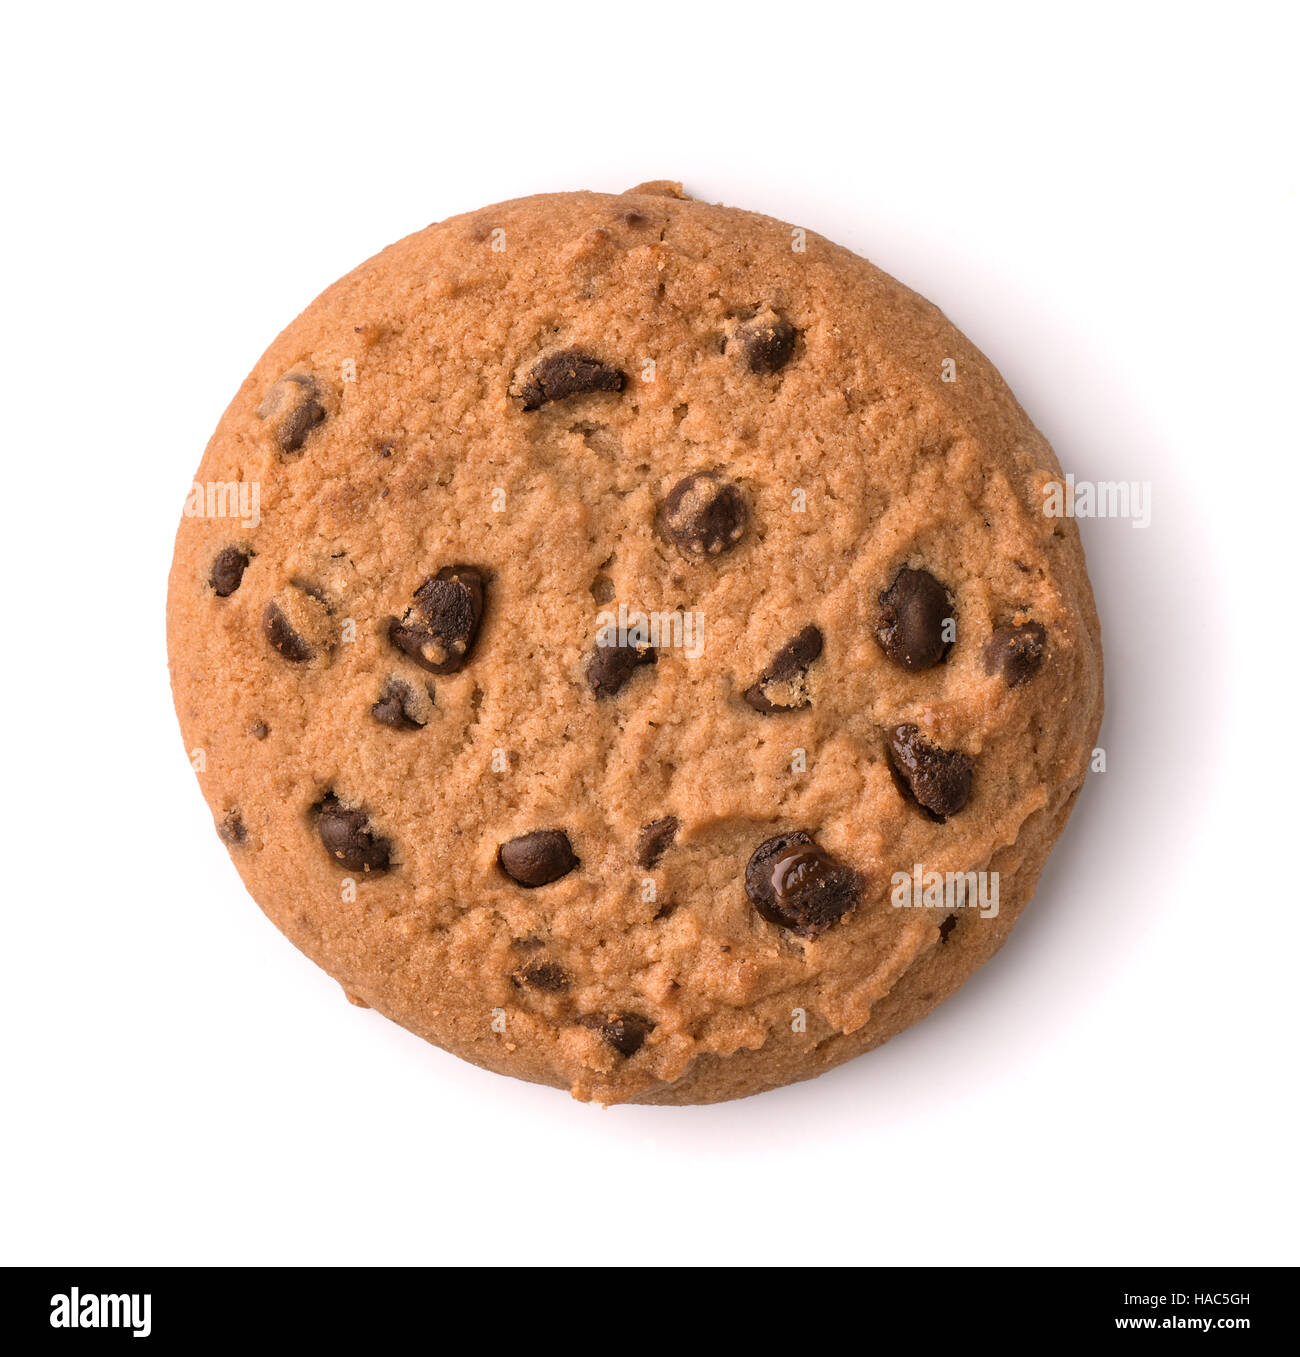 Vista superior de galleta de chocolate isolatec sobre blanco Foto de stock